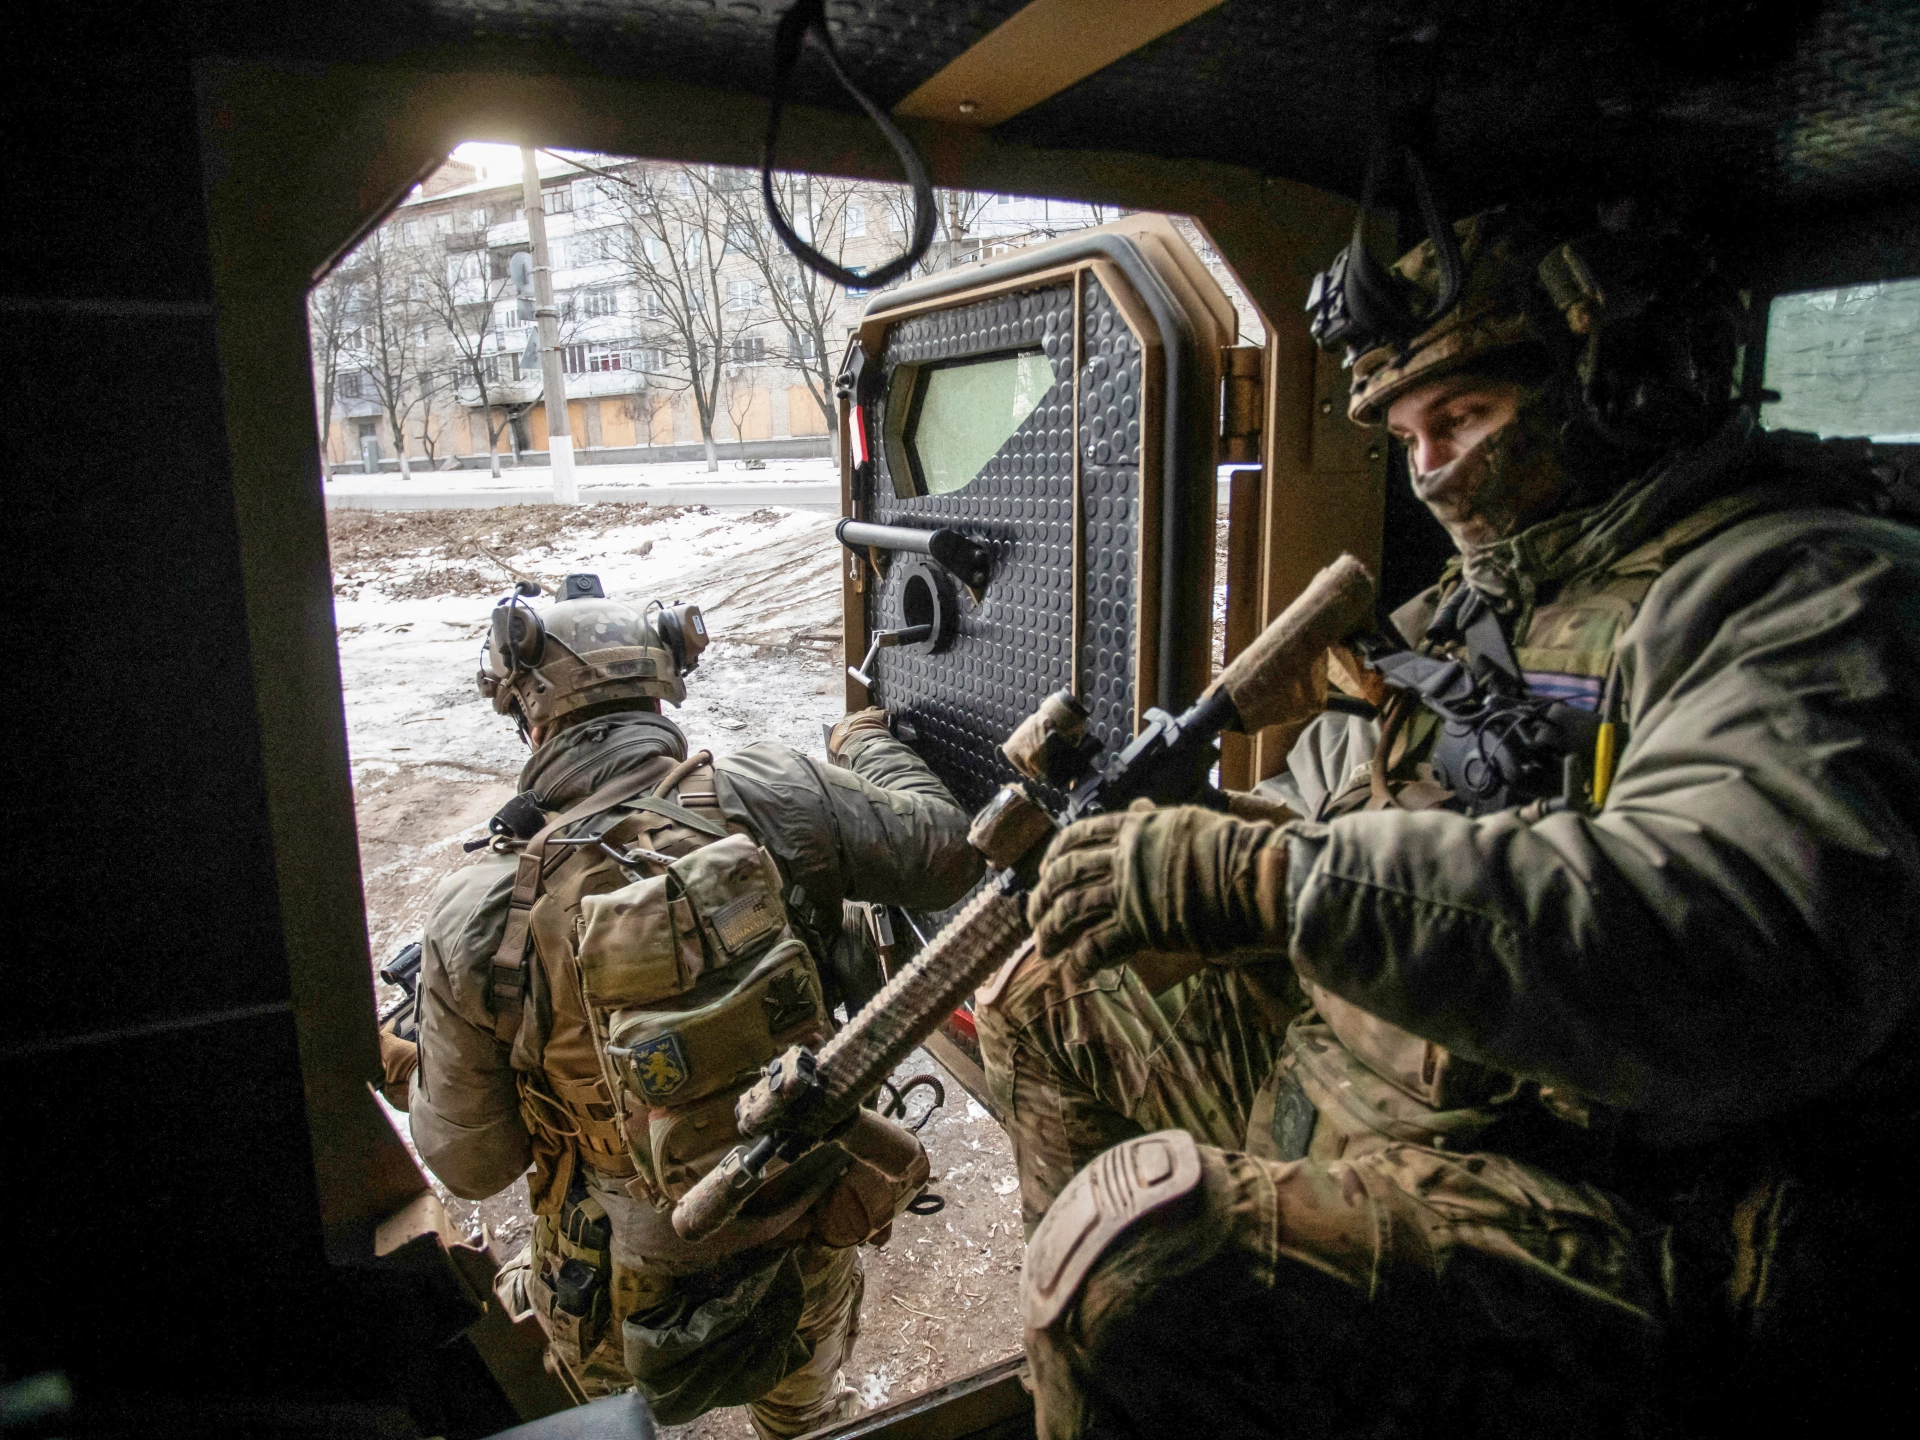 Ρωσικό χτύπημα «αποκεφάλισε» τους Ουκρανούς στο Μπακχμούτ: Χτυπήθηκε το στρατηγείο που ήταν υπεύθυνο για την άμυνα της περιοχής